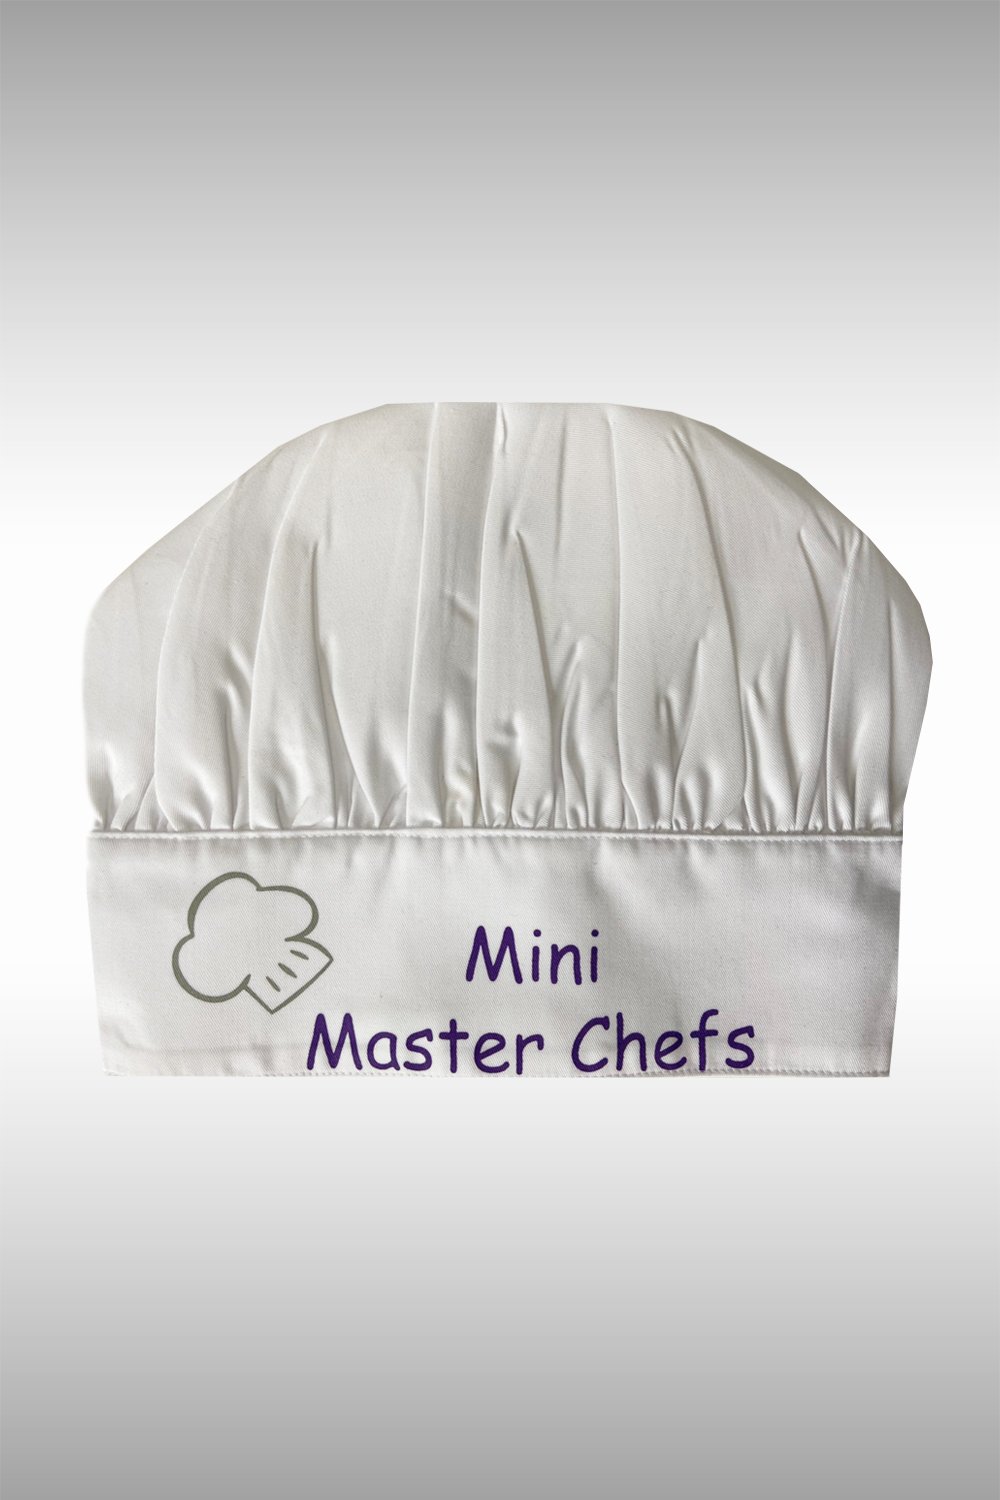 ตัวอย่างสกรีน Mini Master Chefs